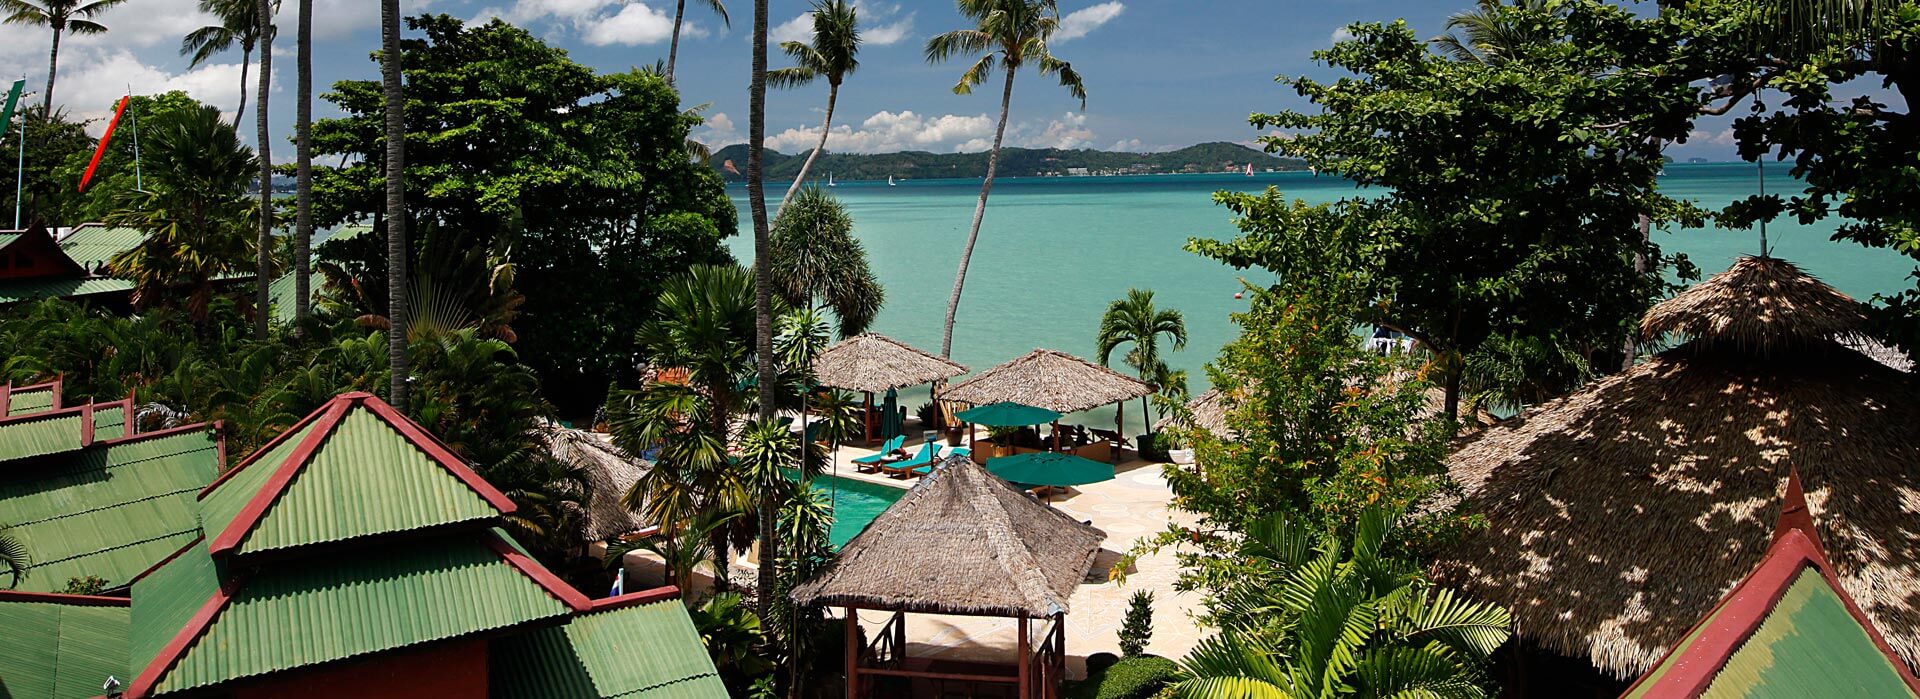 Friendship Beach Resort & Spa Hotel in Rawai Phuket